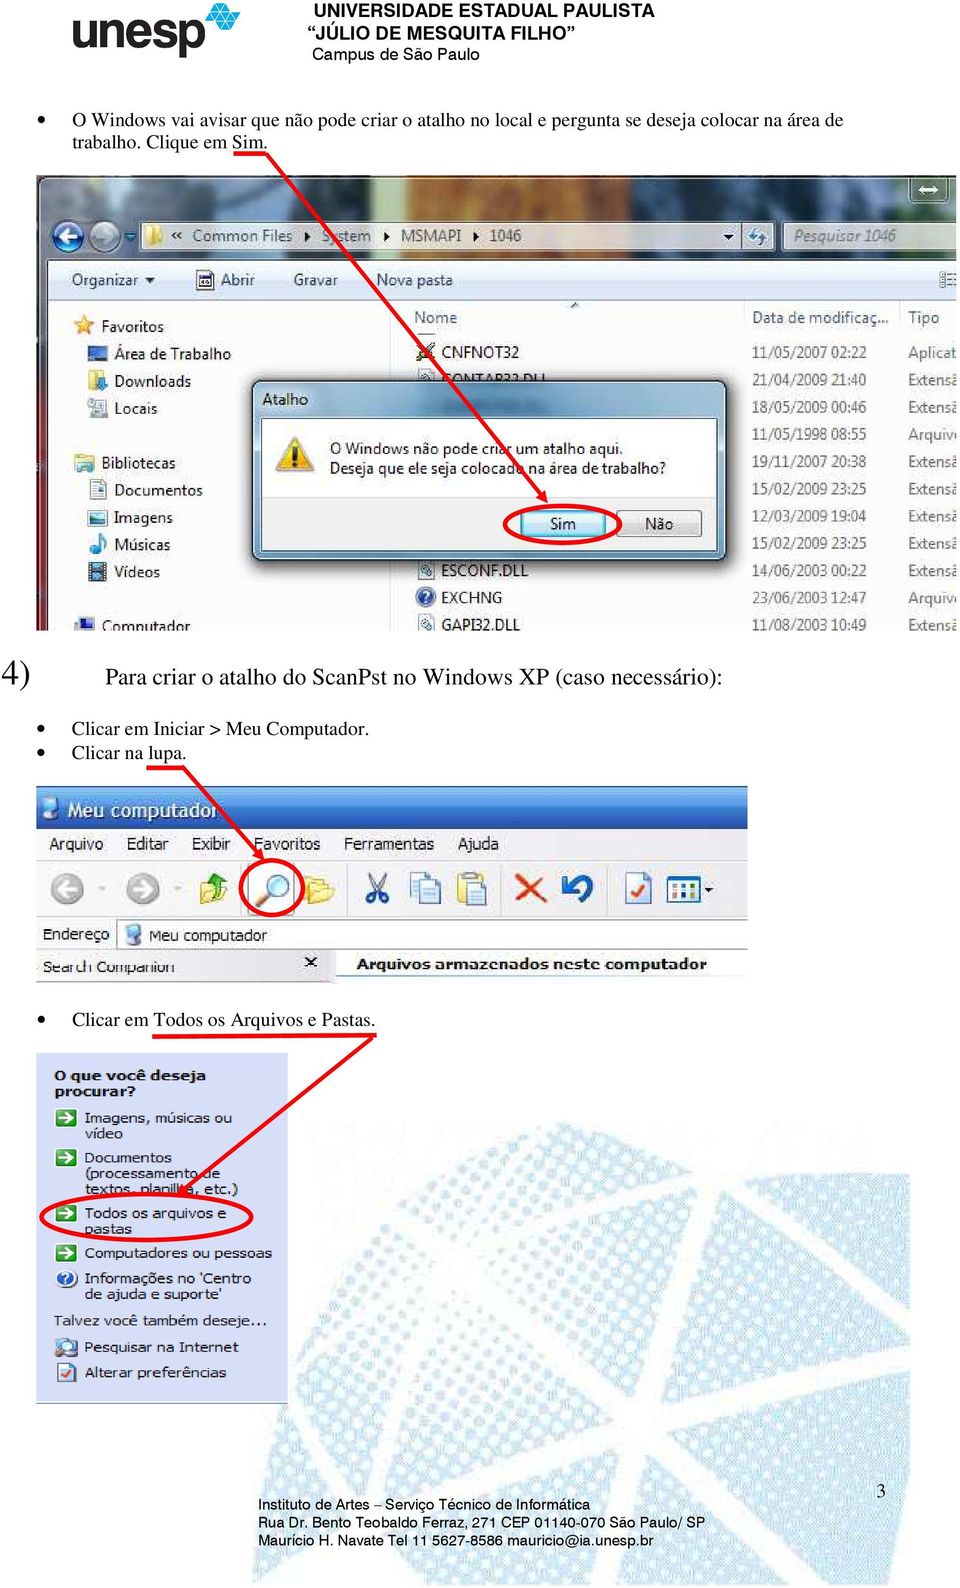 4) Para criar o atalho do ScanPst no Windows XP (caso necessário):